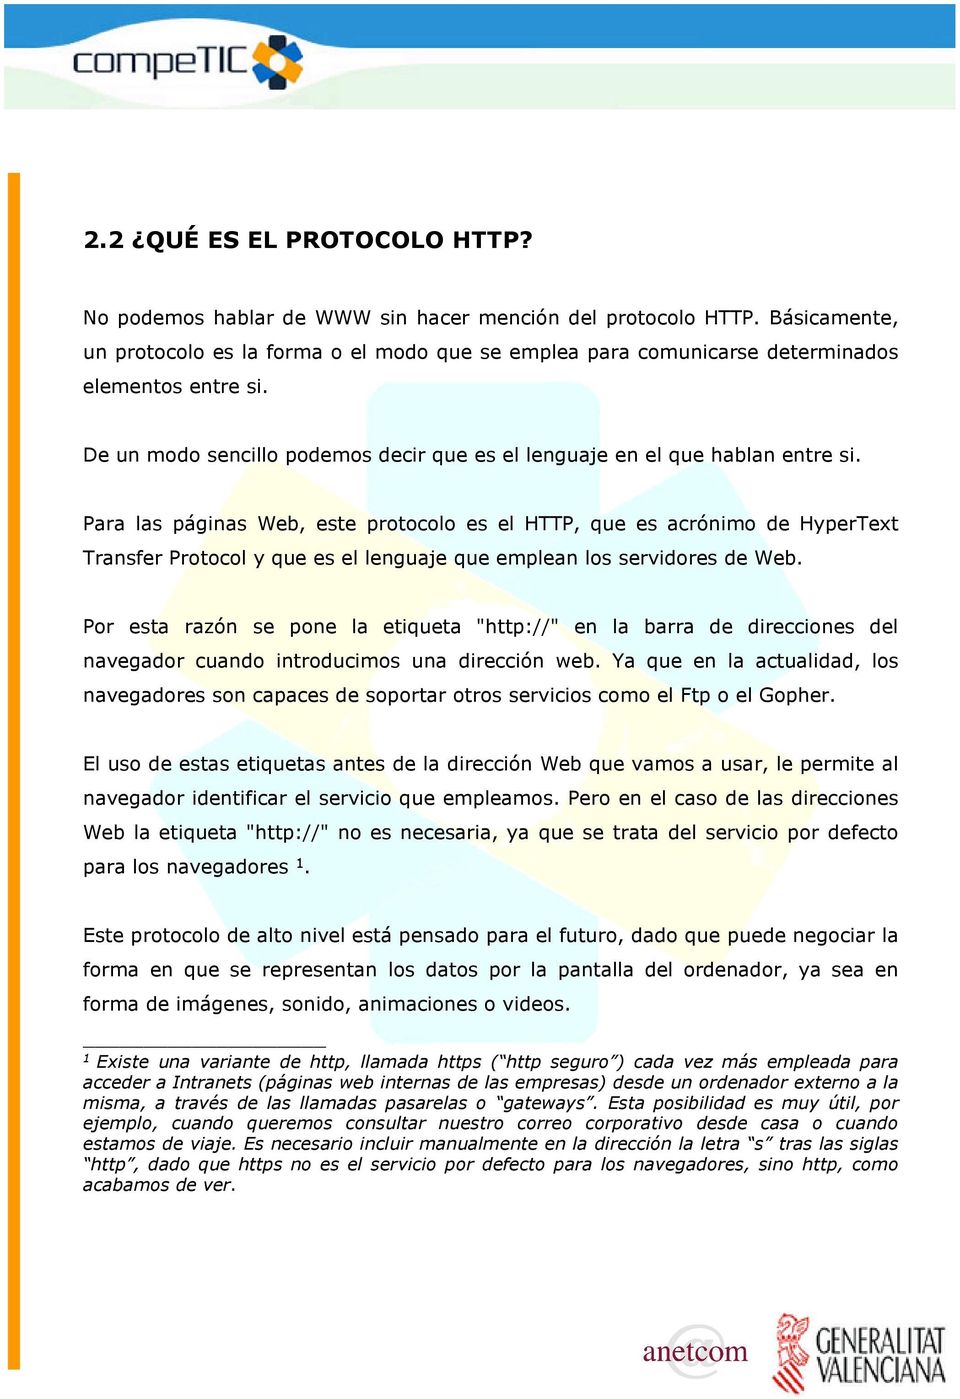 Para las páginas Web, este protocolo es el HTTP, que es acrónimo de HyperText Transfer Protocol y que es el lenguaje que emplean los servidores de Web.